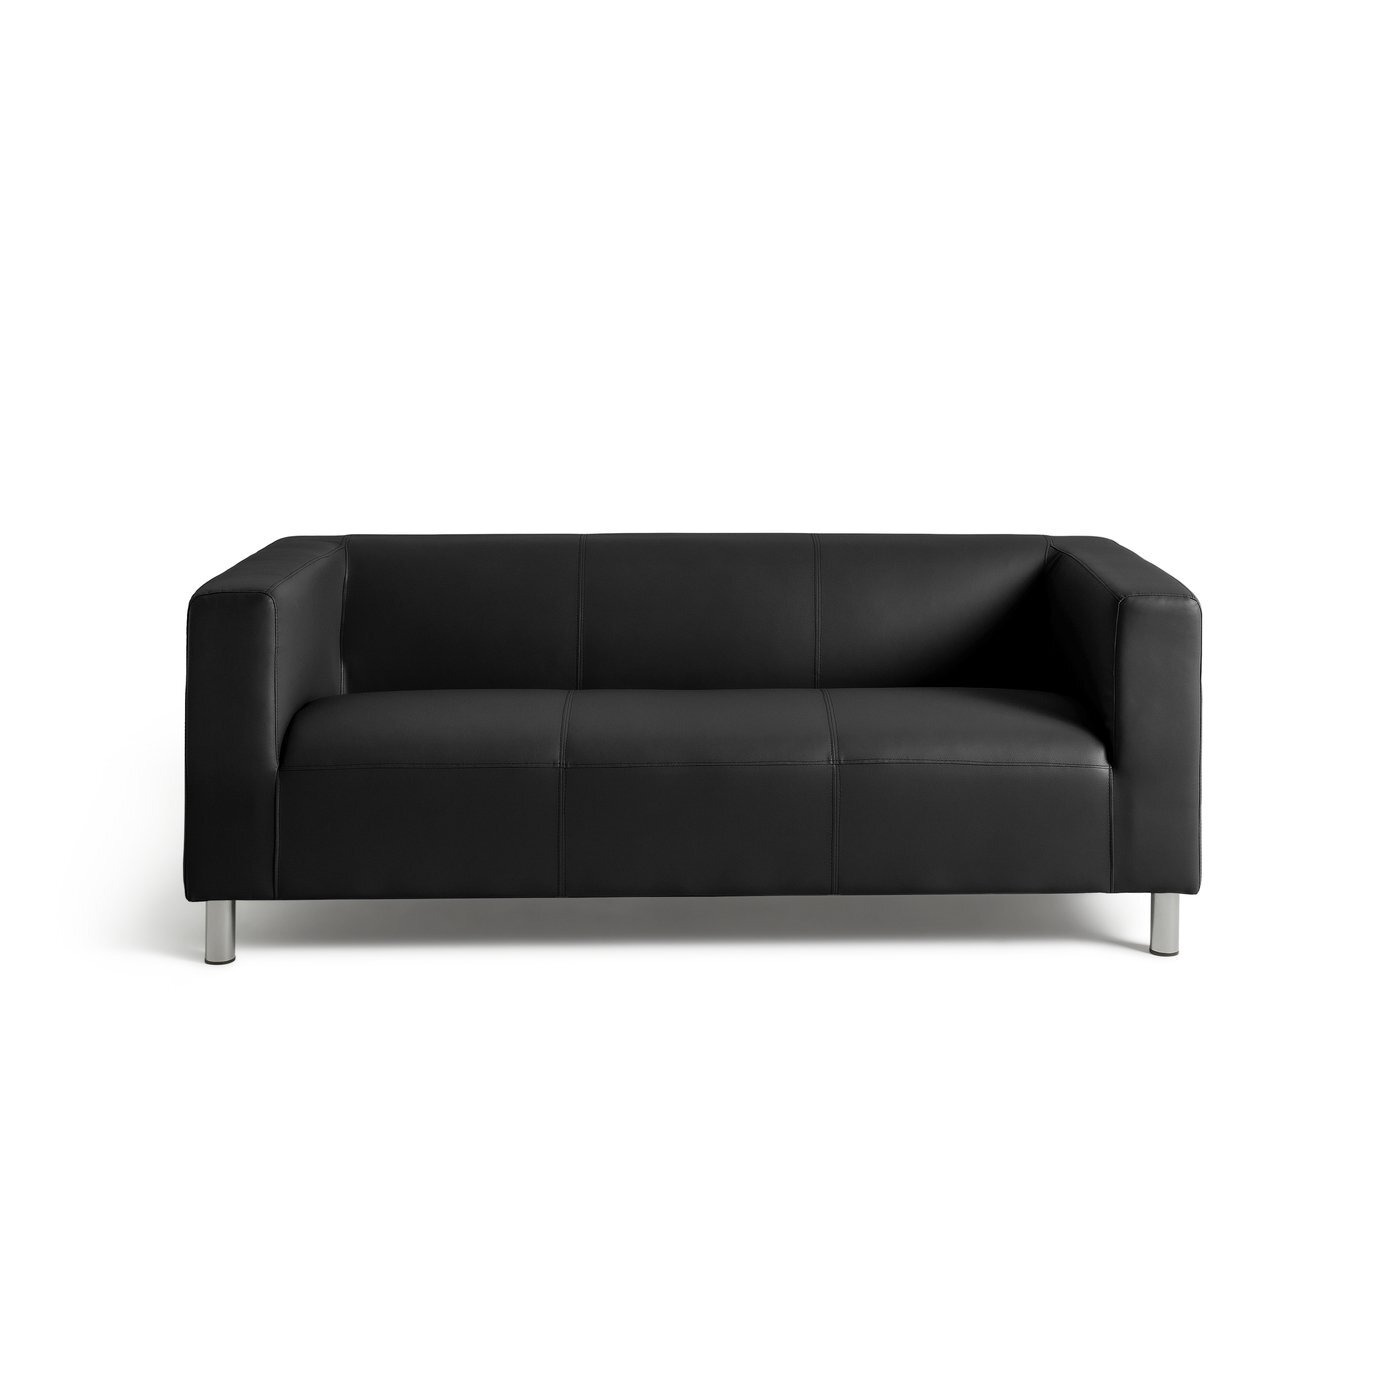 Argos Home Moda Leather 3 Seater Sofa - Black - image 1